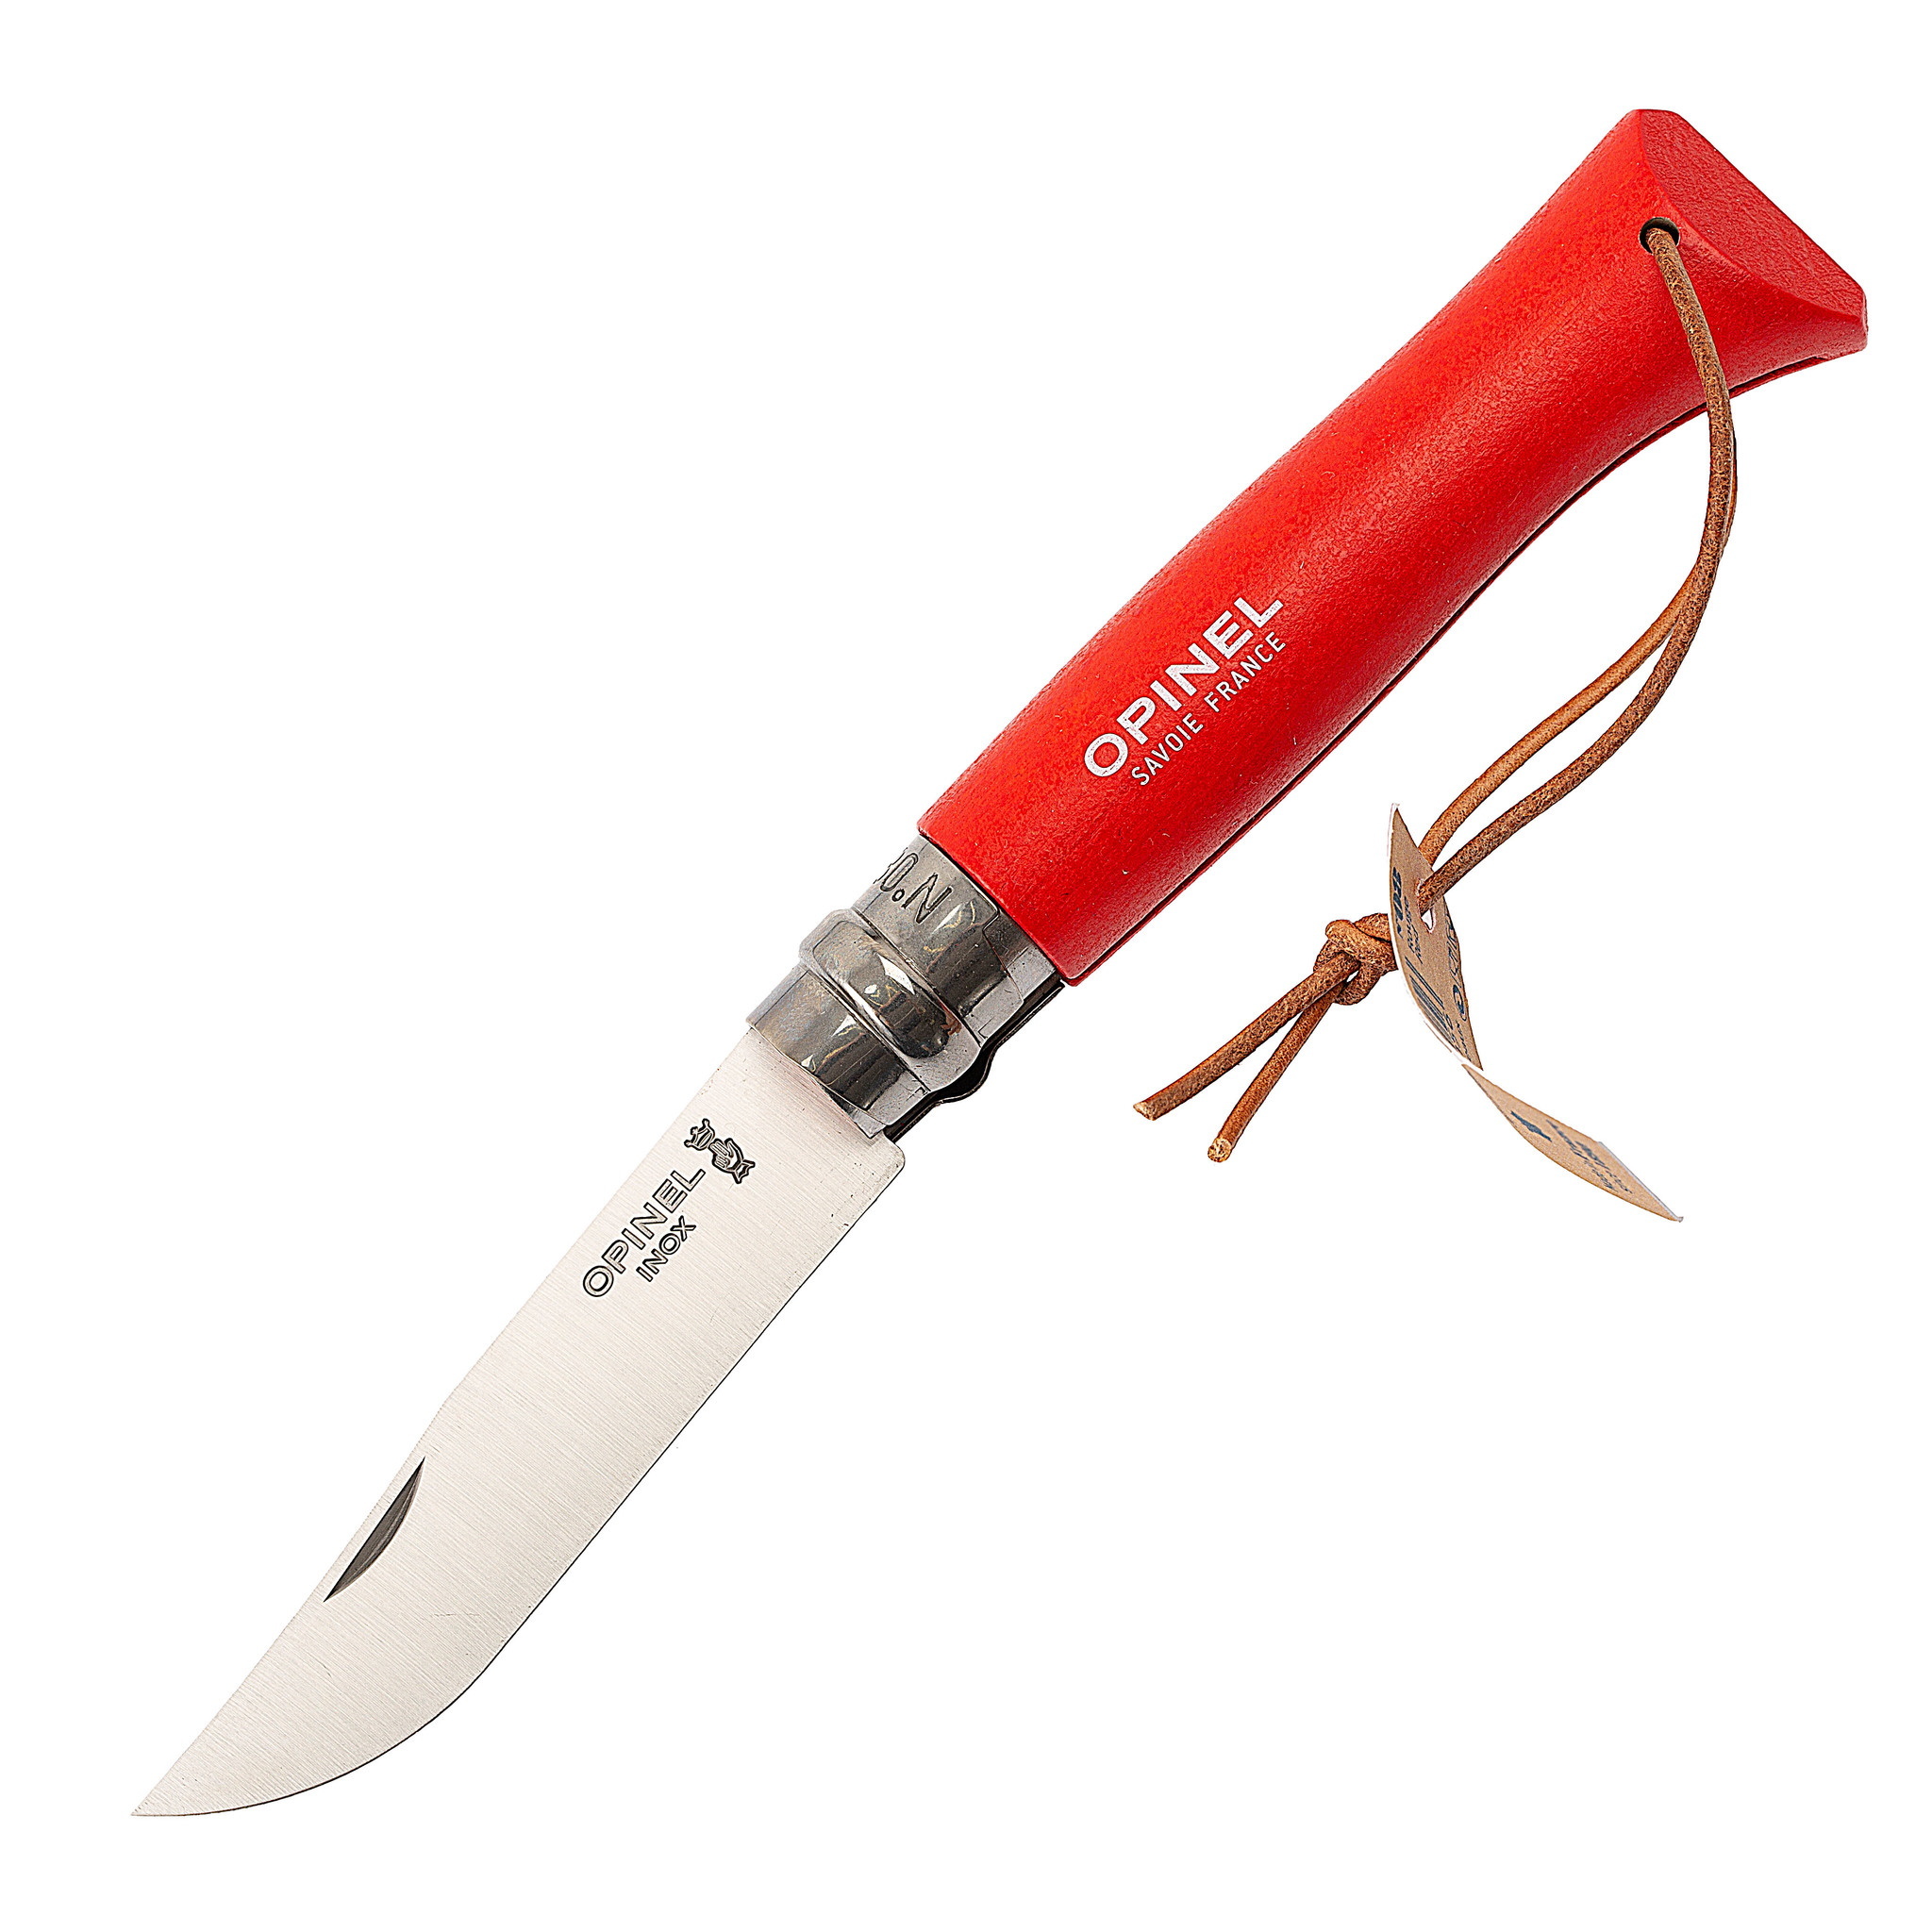 Складной Нож Opinel №8 Trekking, нержавеющая сталь Sandvik 12C27, красный, 001890, с чехлом